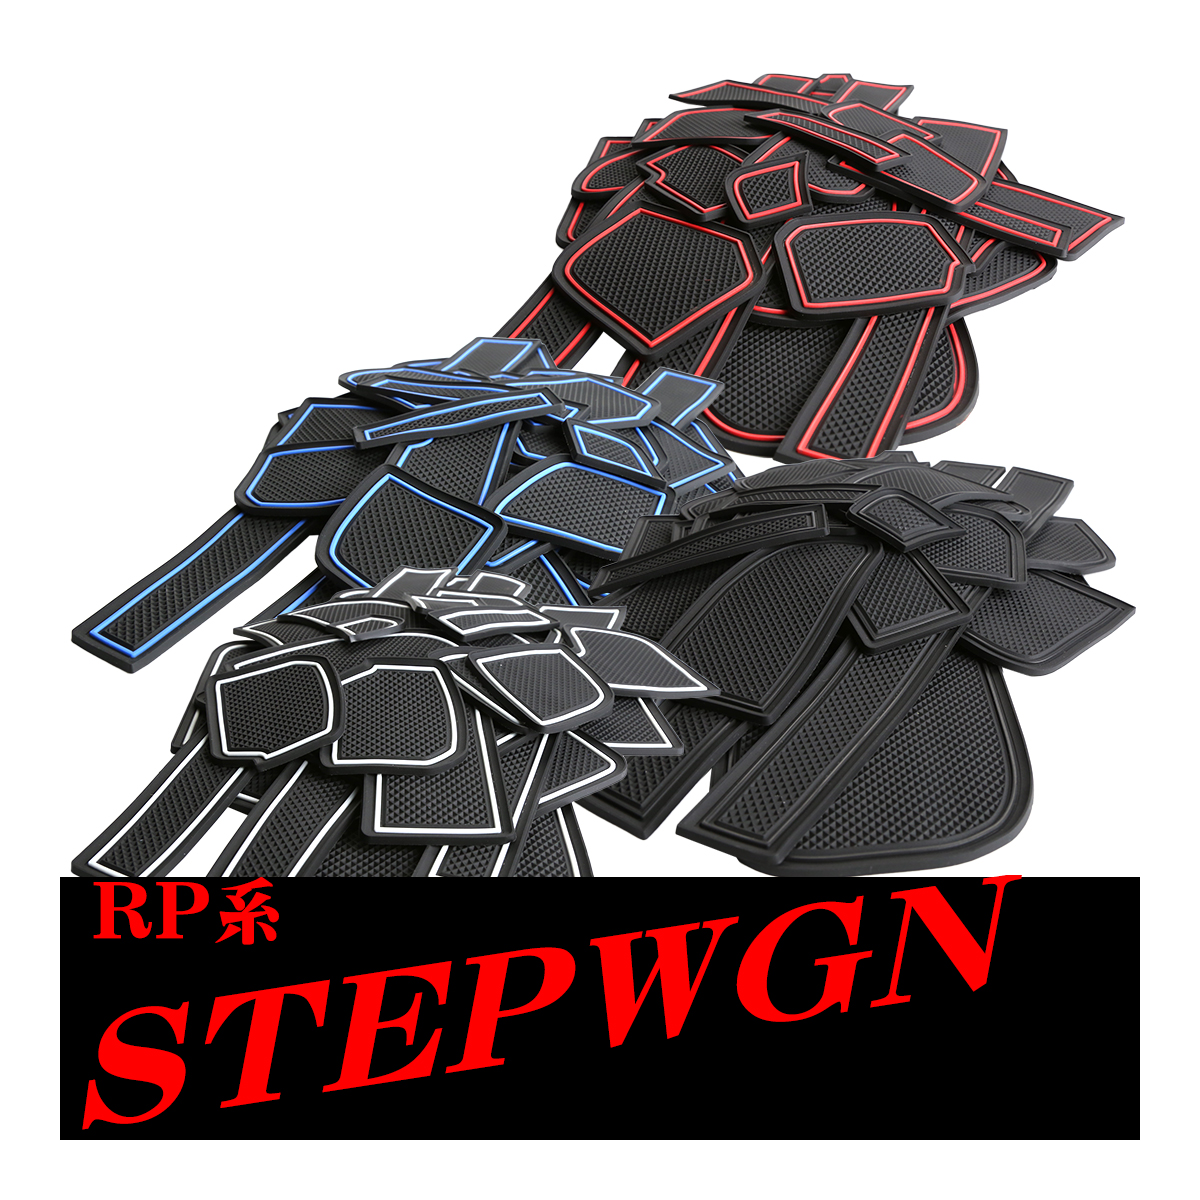 RP系 ステップワゴン ゴム ポケット マット ブルー RP1/RP2/RP3/RP4 ブルー/レッド/グロー夜光/ブラック